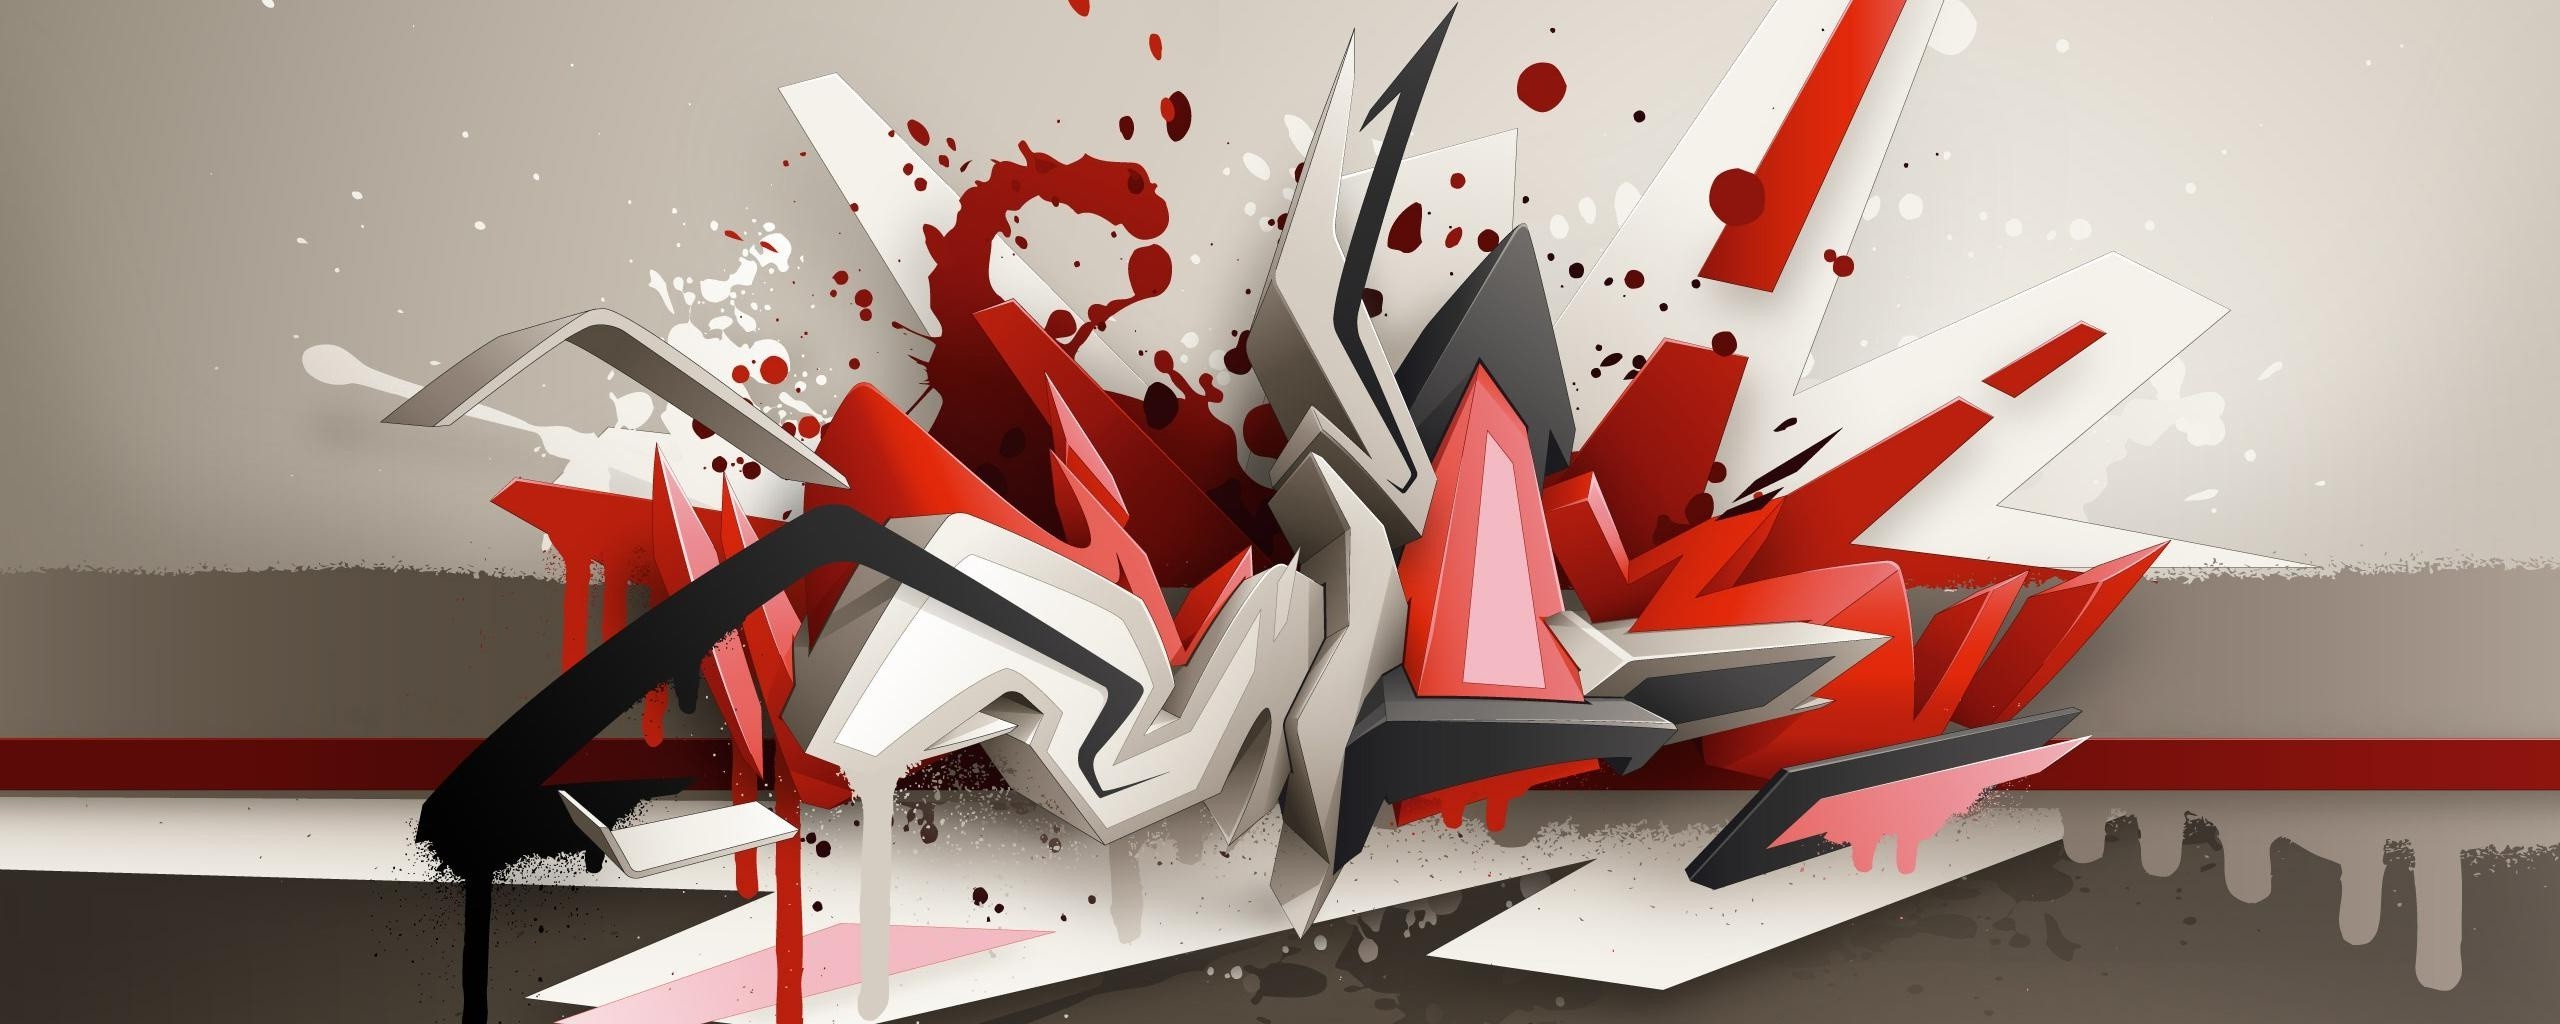 wallpaper grafiti 3d,red,graphic design,art,carmine,graffiti